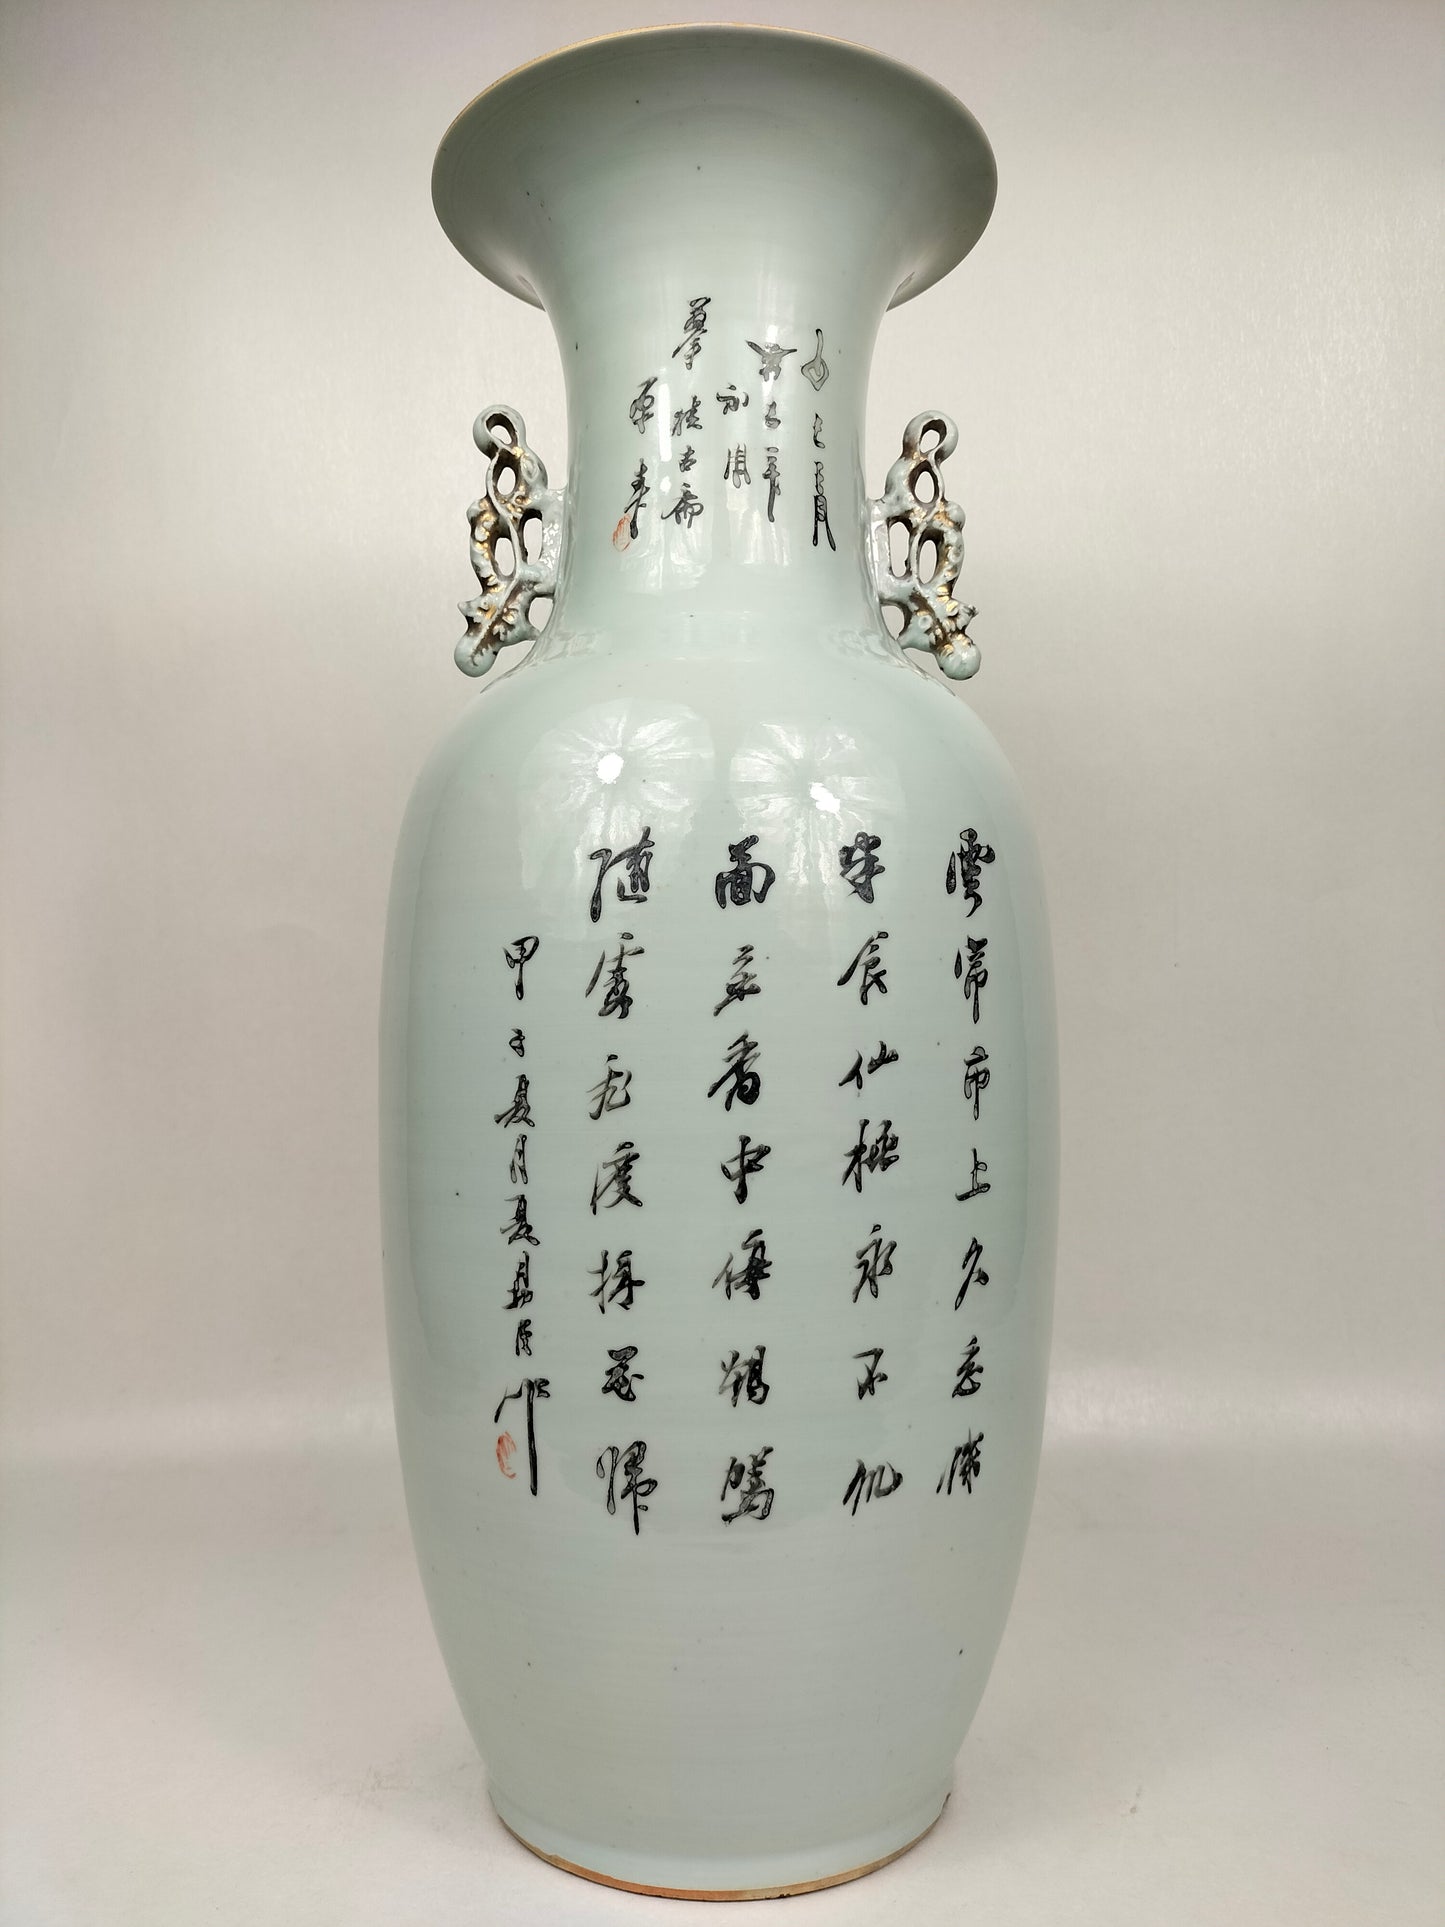 Chiếc bình cổ lớn của Trung Quốc được trang trí hình một người phụ nữ và một con nai // Thời kỳ Cộng hòa (1912-1949)